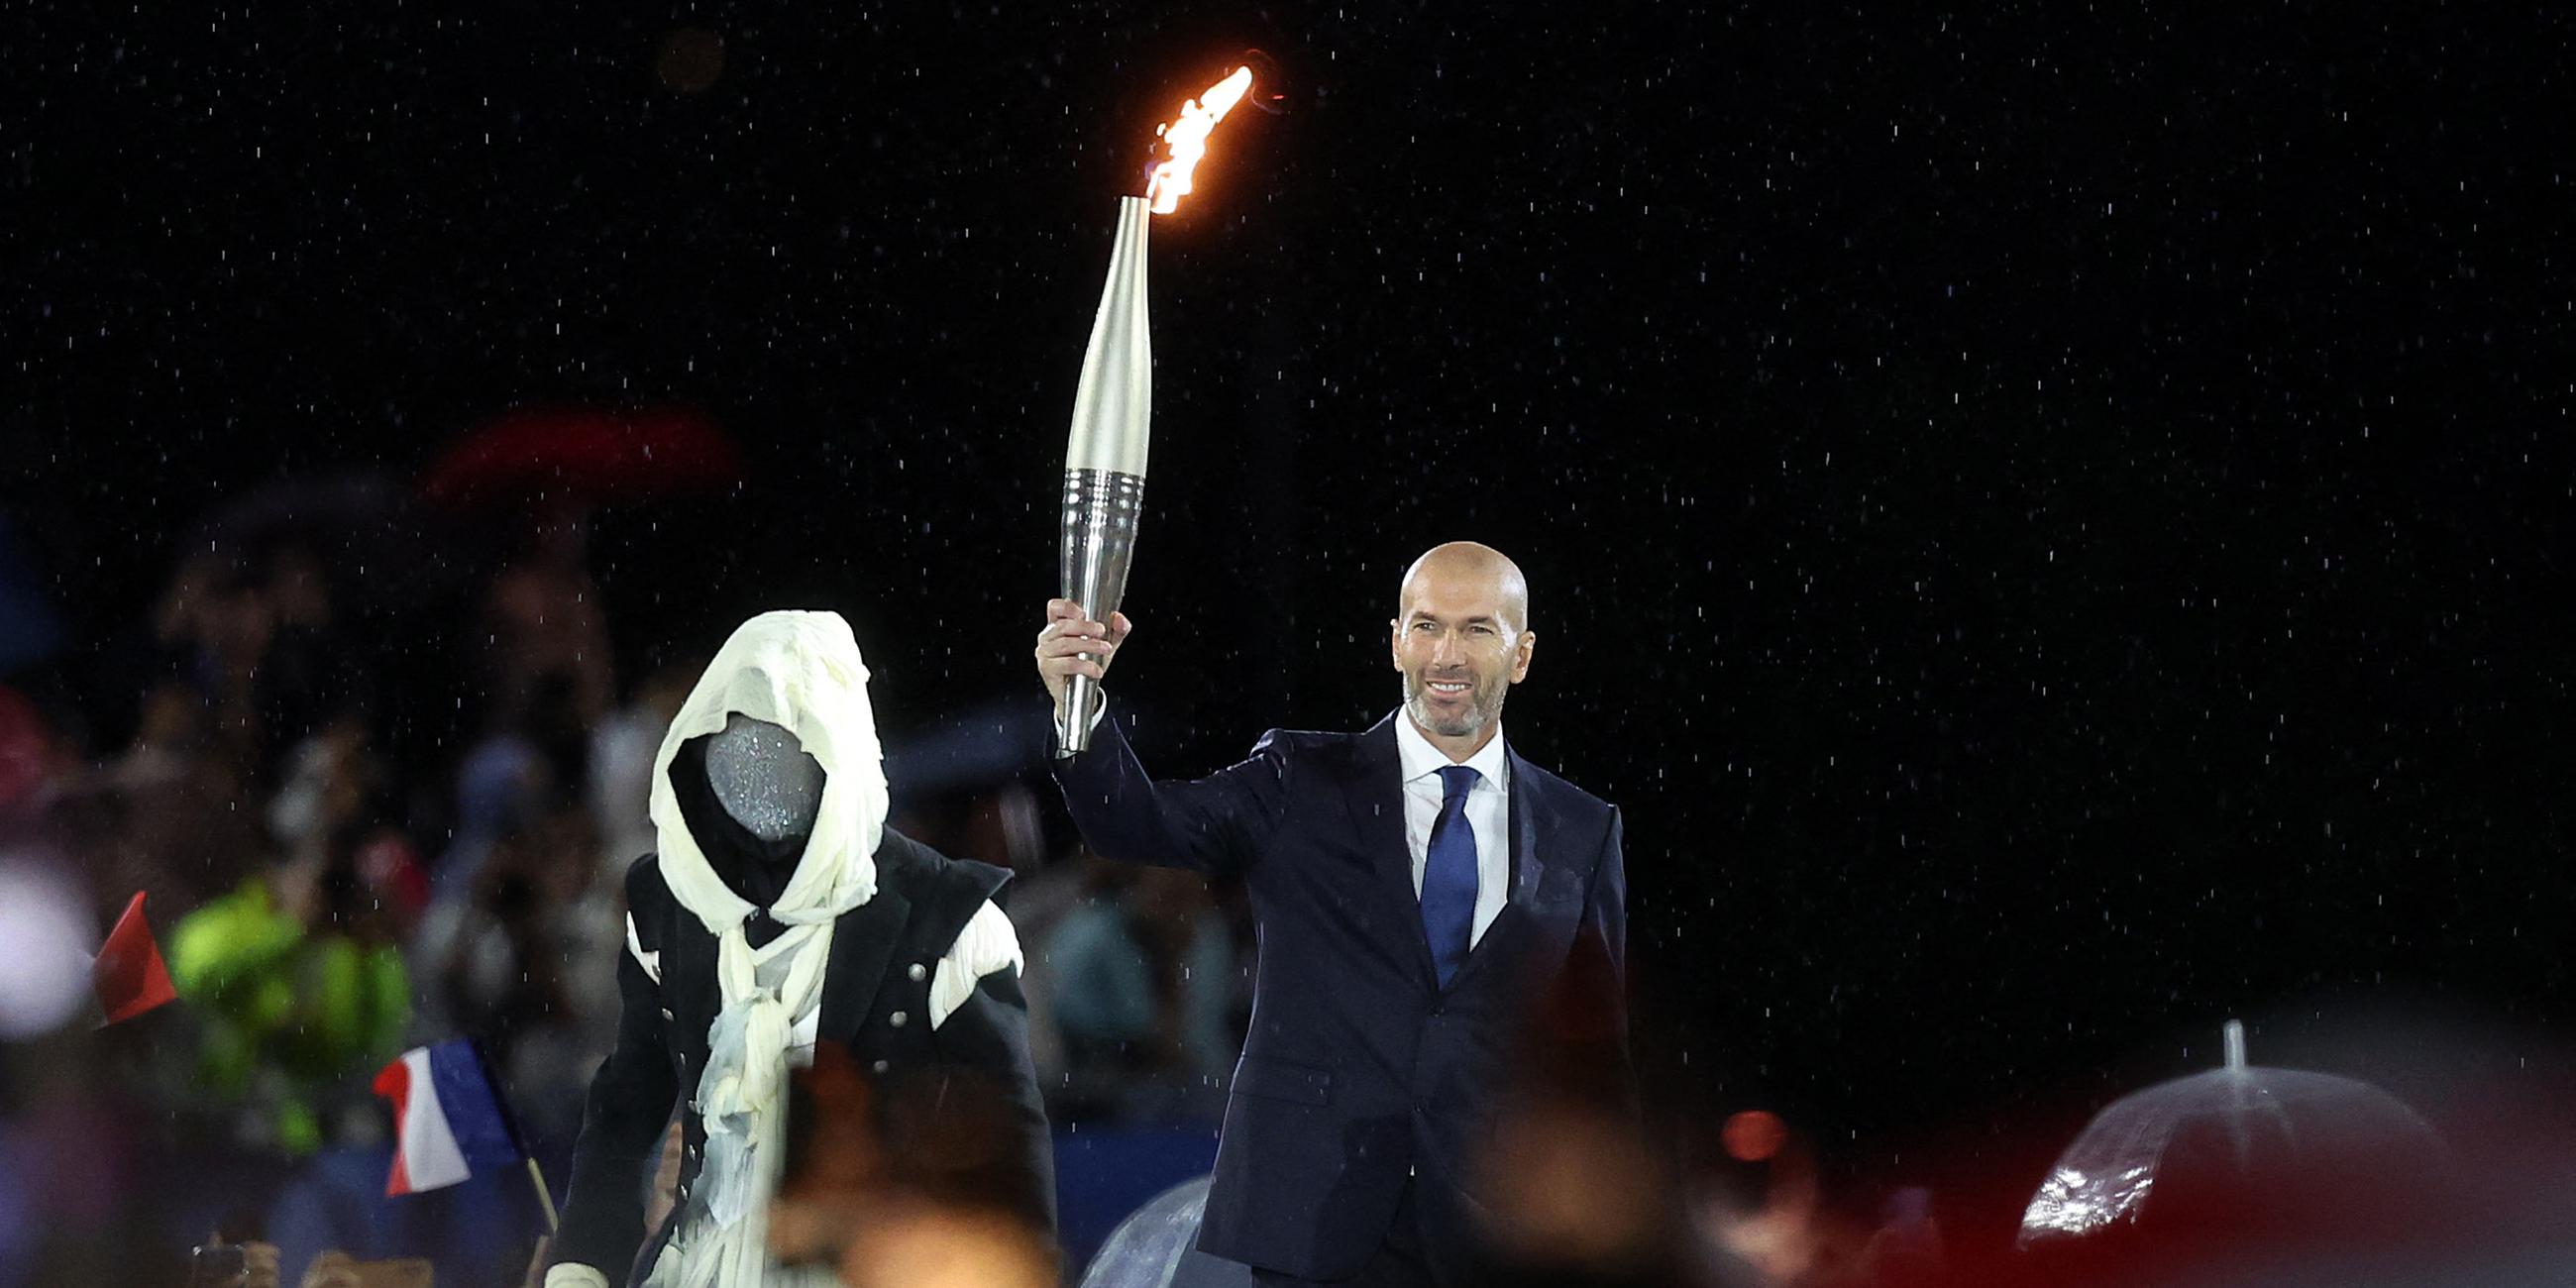 Zinedine Zidane, ehemaliger französischer Fußballspieler und -manager, hält die olympische Fackel